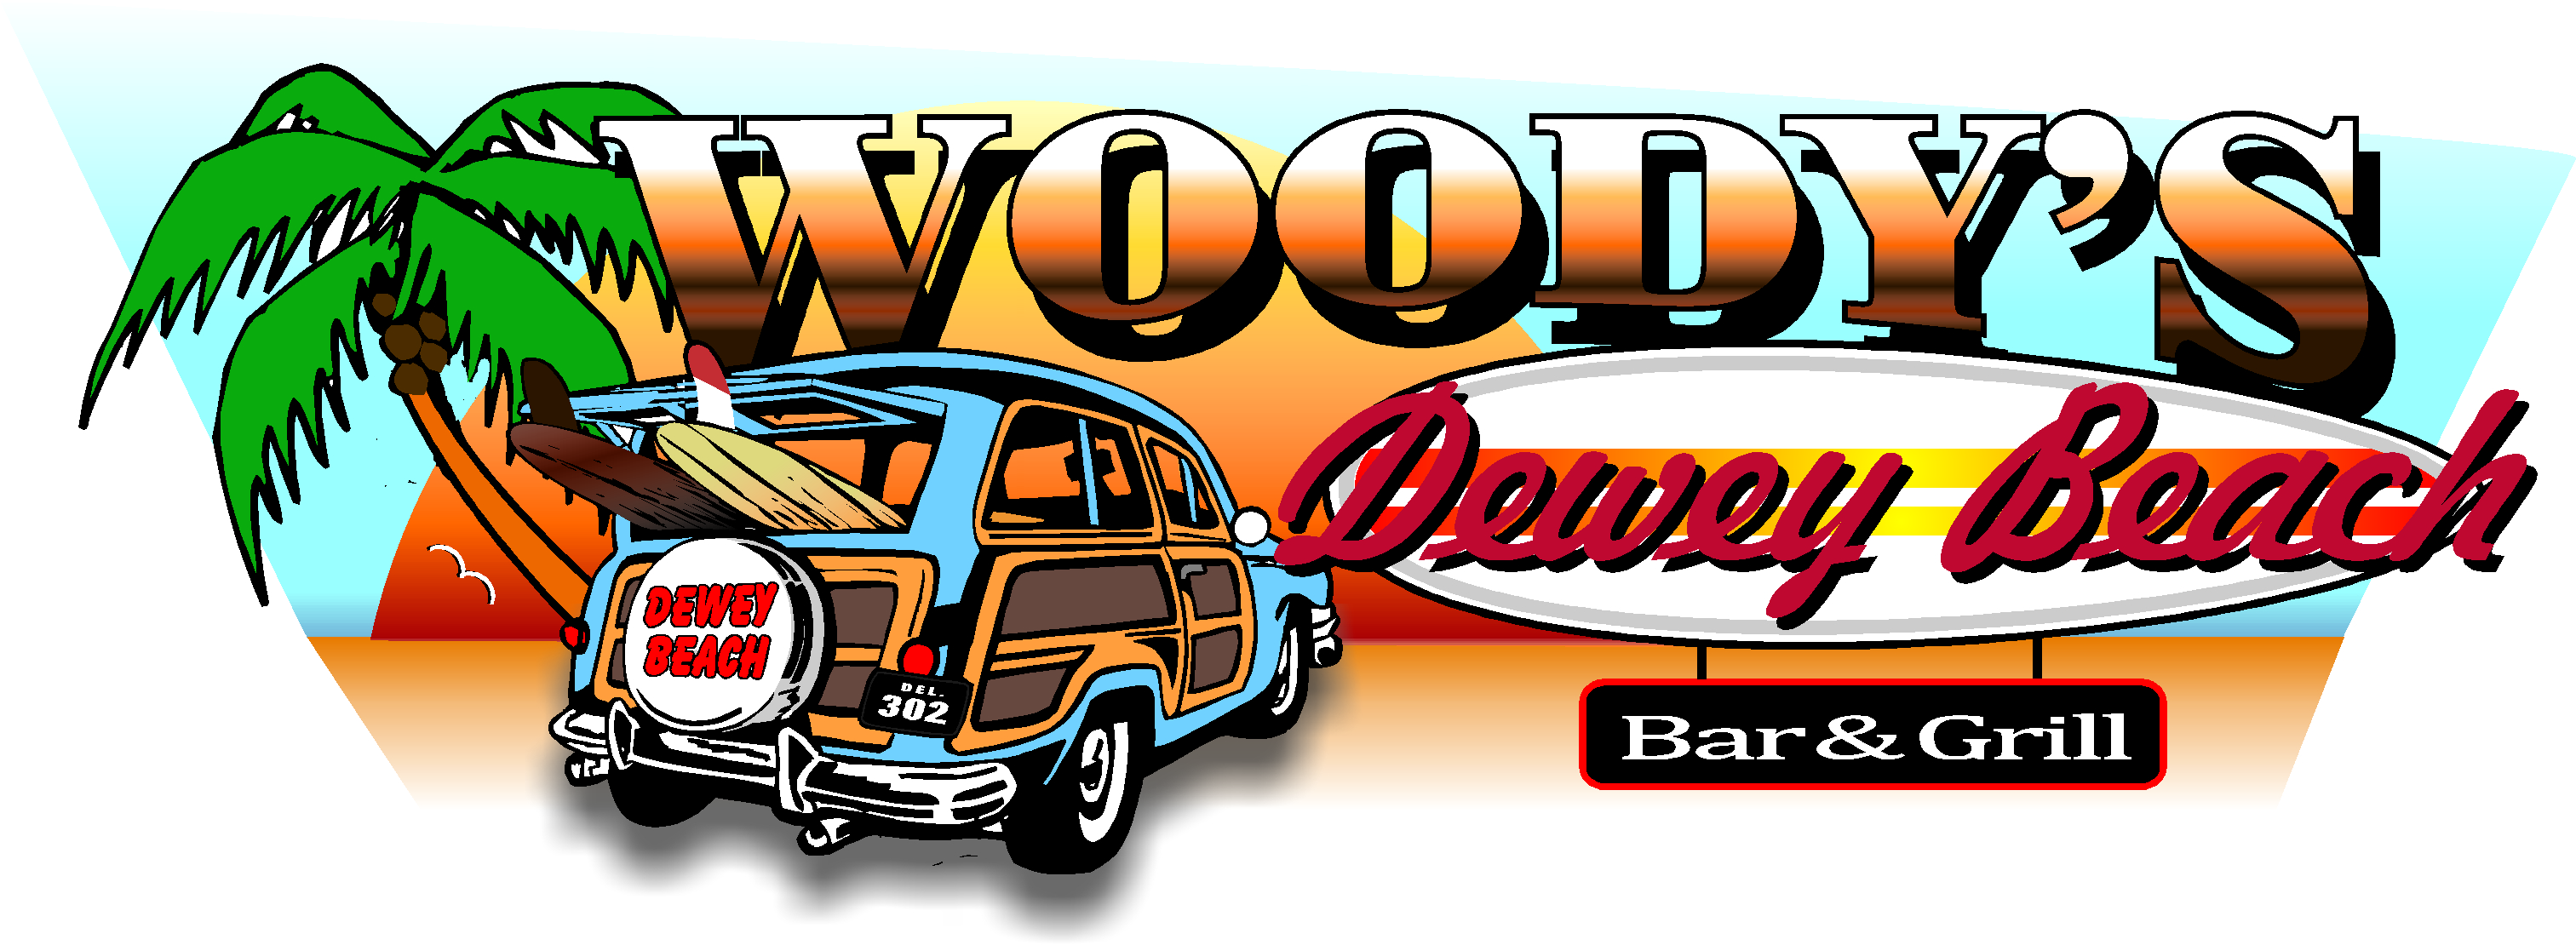 Woodys-logo-1-DB